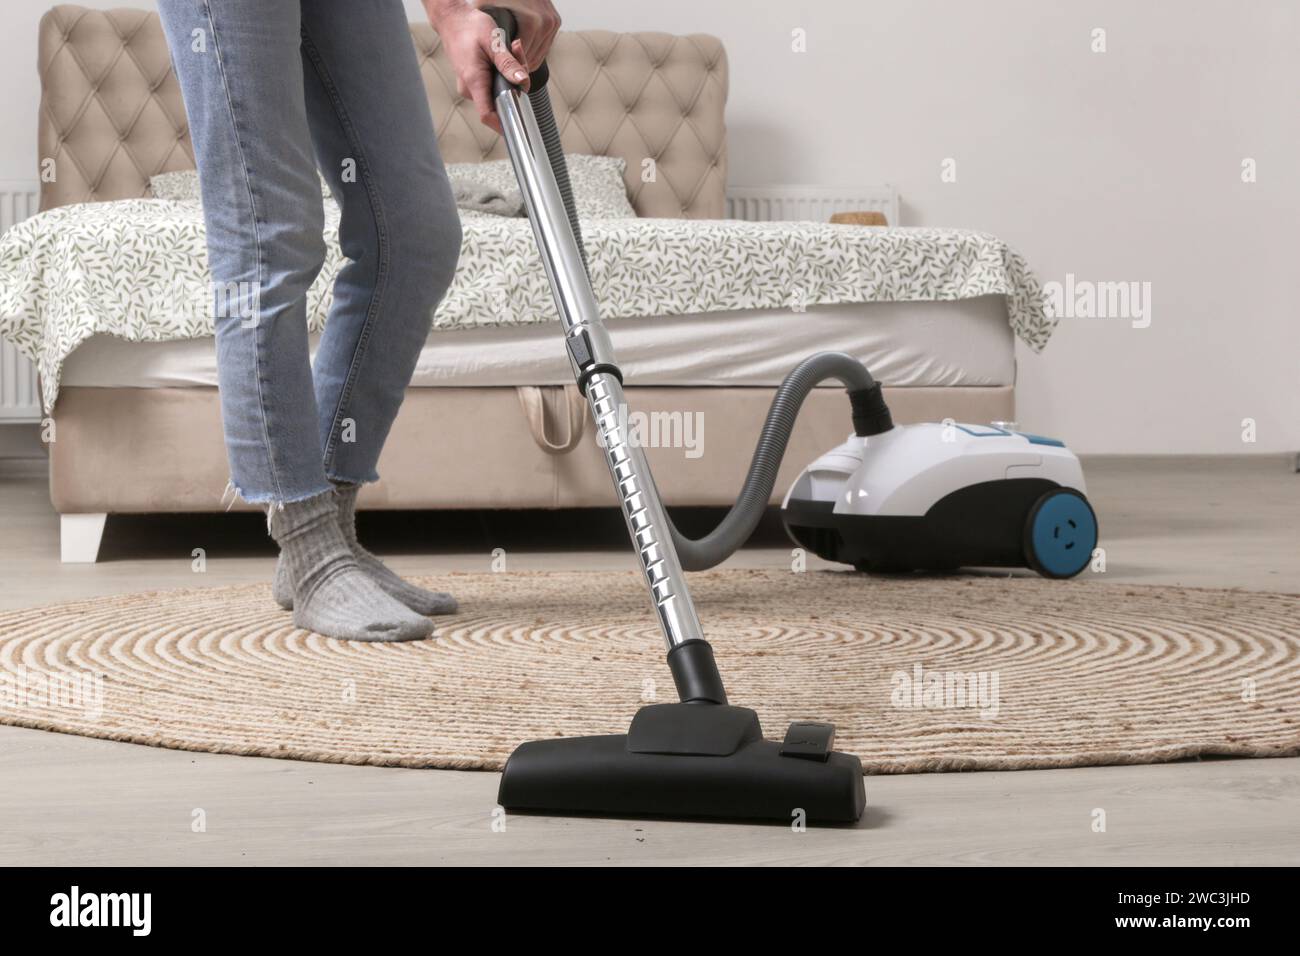 Femme au foyer aspirant la chambre, vie domestique, concept de nettoyage de l'appartement Banque D'Images